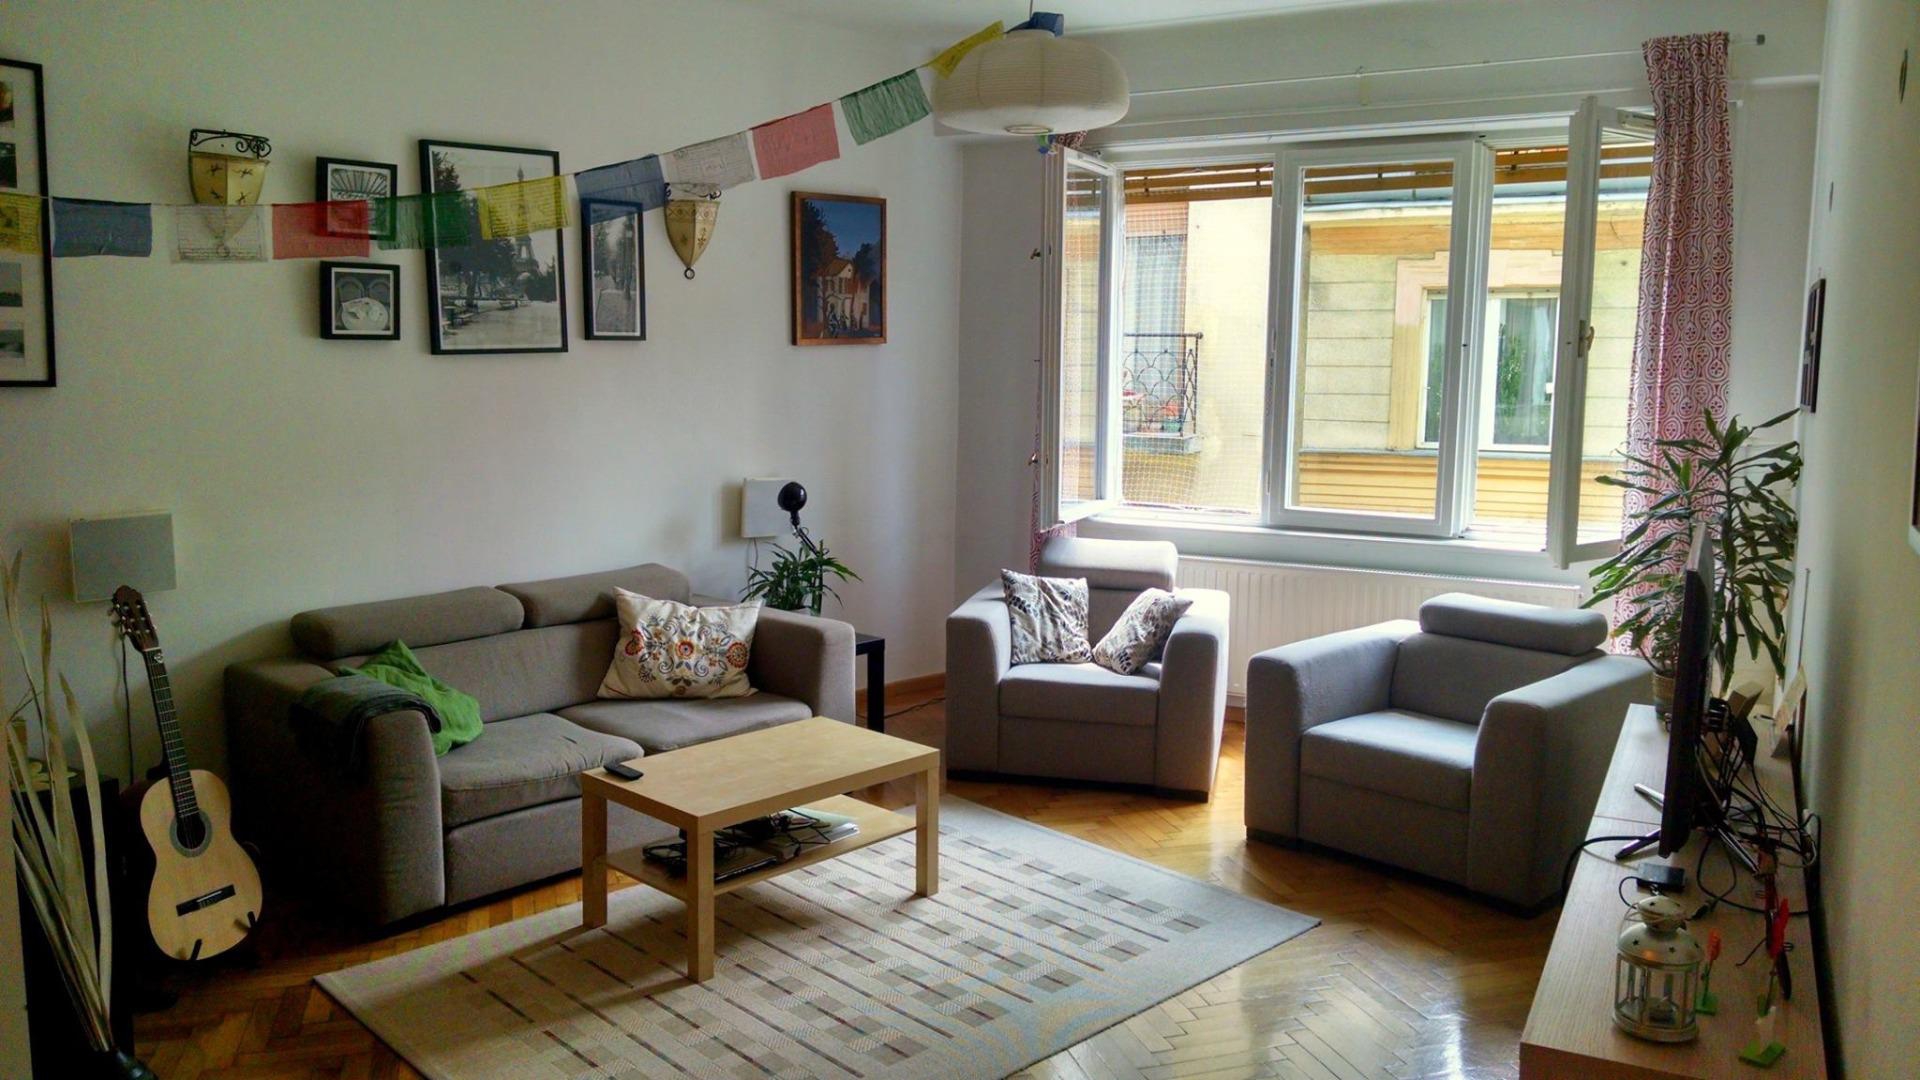 Lakást bérelnél Budapesten? Összegyűjtöttük a legfrissebb ajánlatokat!